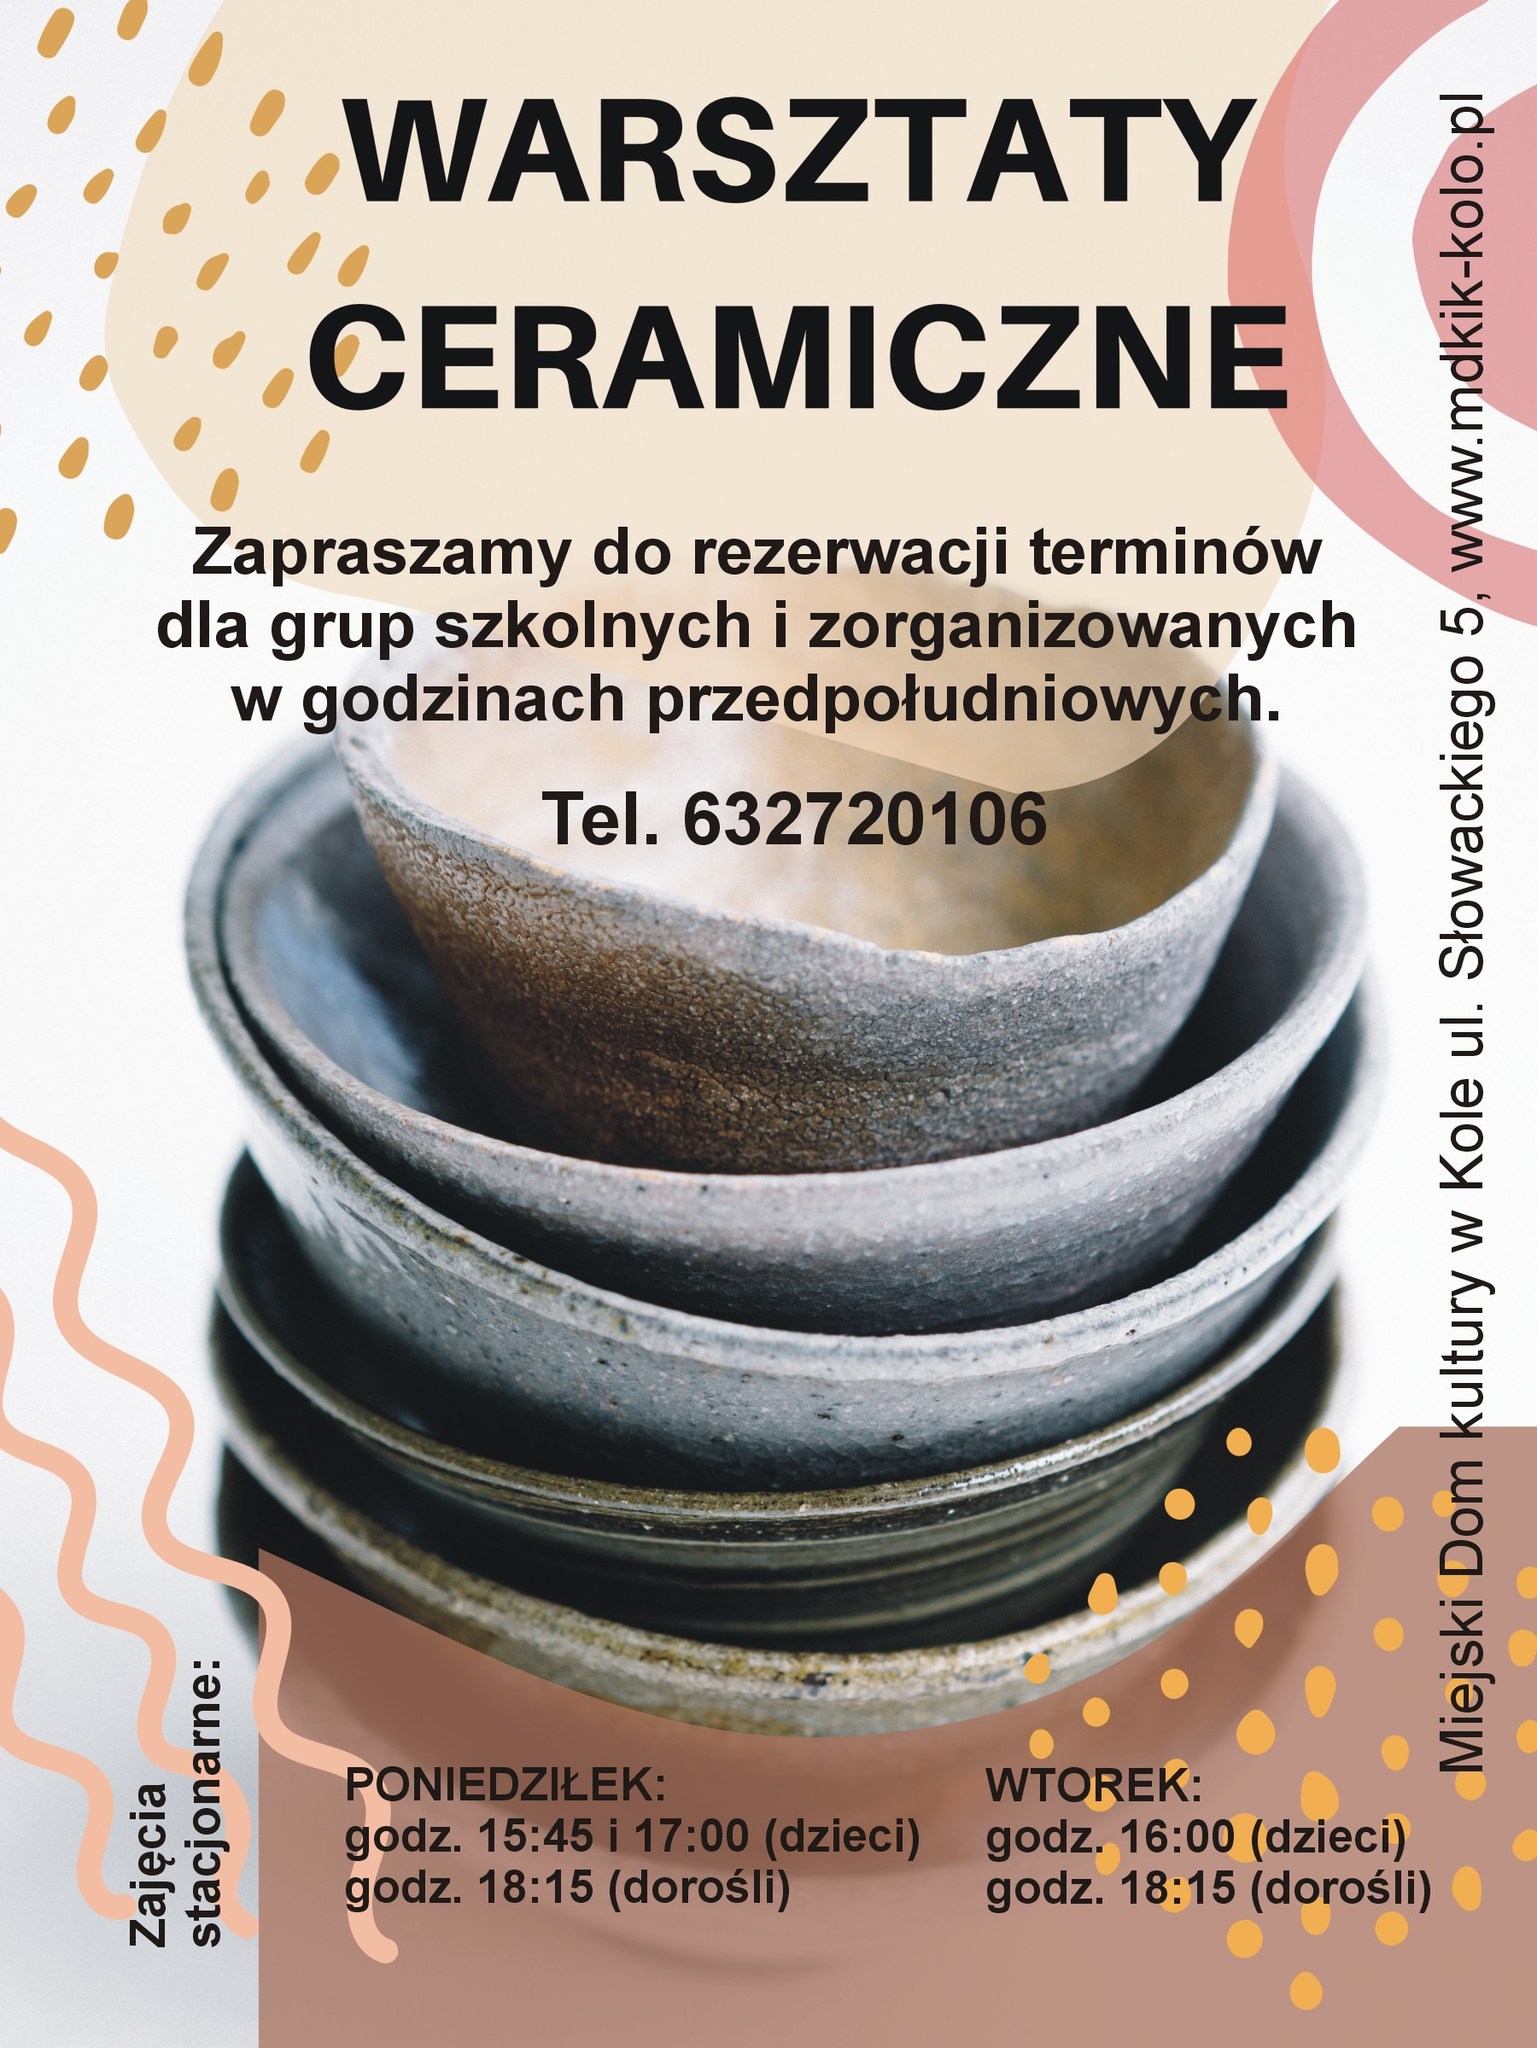 Plakat informujący o warsztatach ceramicznych w Miejskim Domu Kultury w Kole